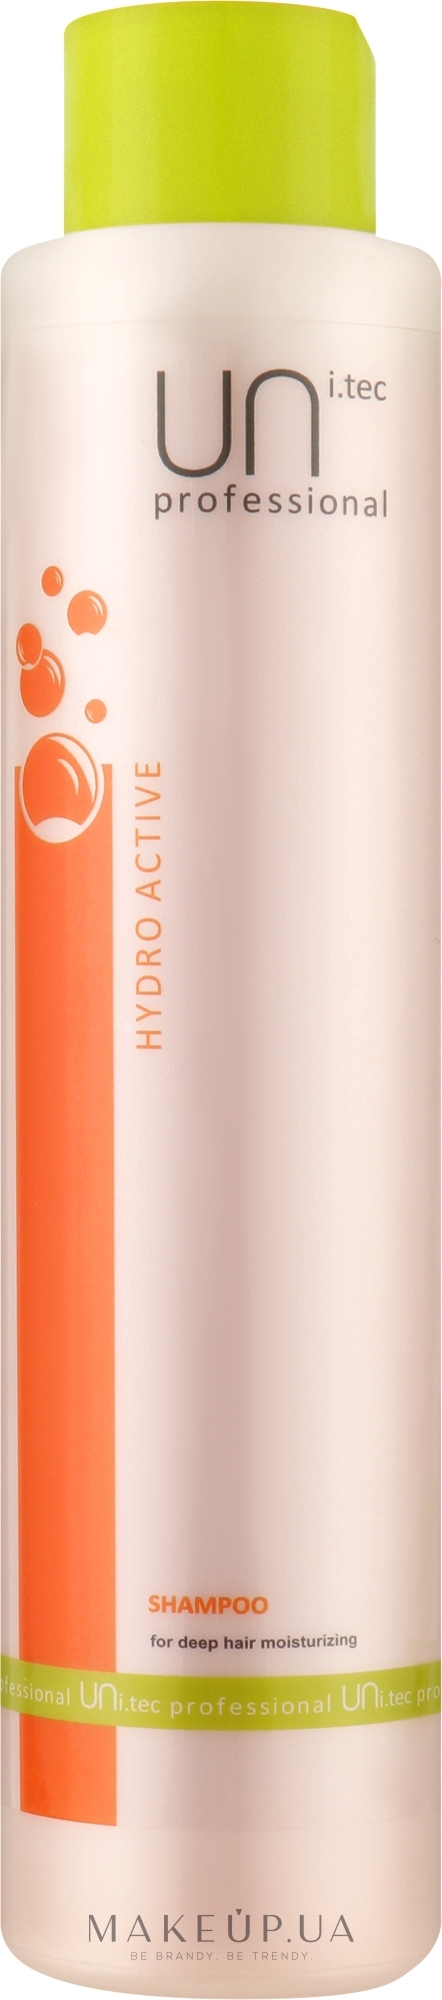 Шампунь для глубокого увлажнения волос - UNI.tec Professional Hydro Active Shampoo — фото 750ml